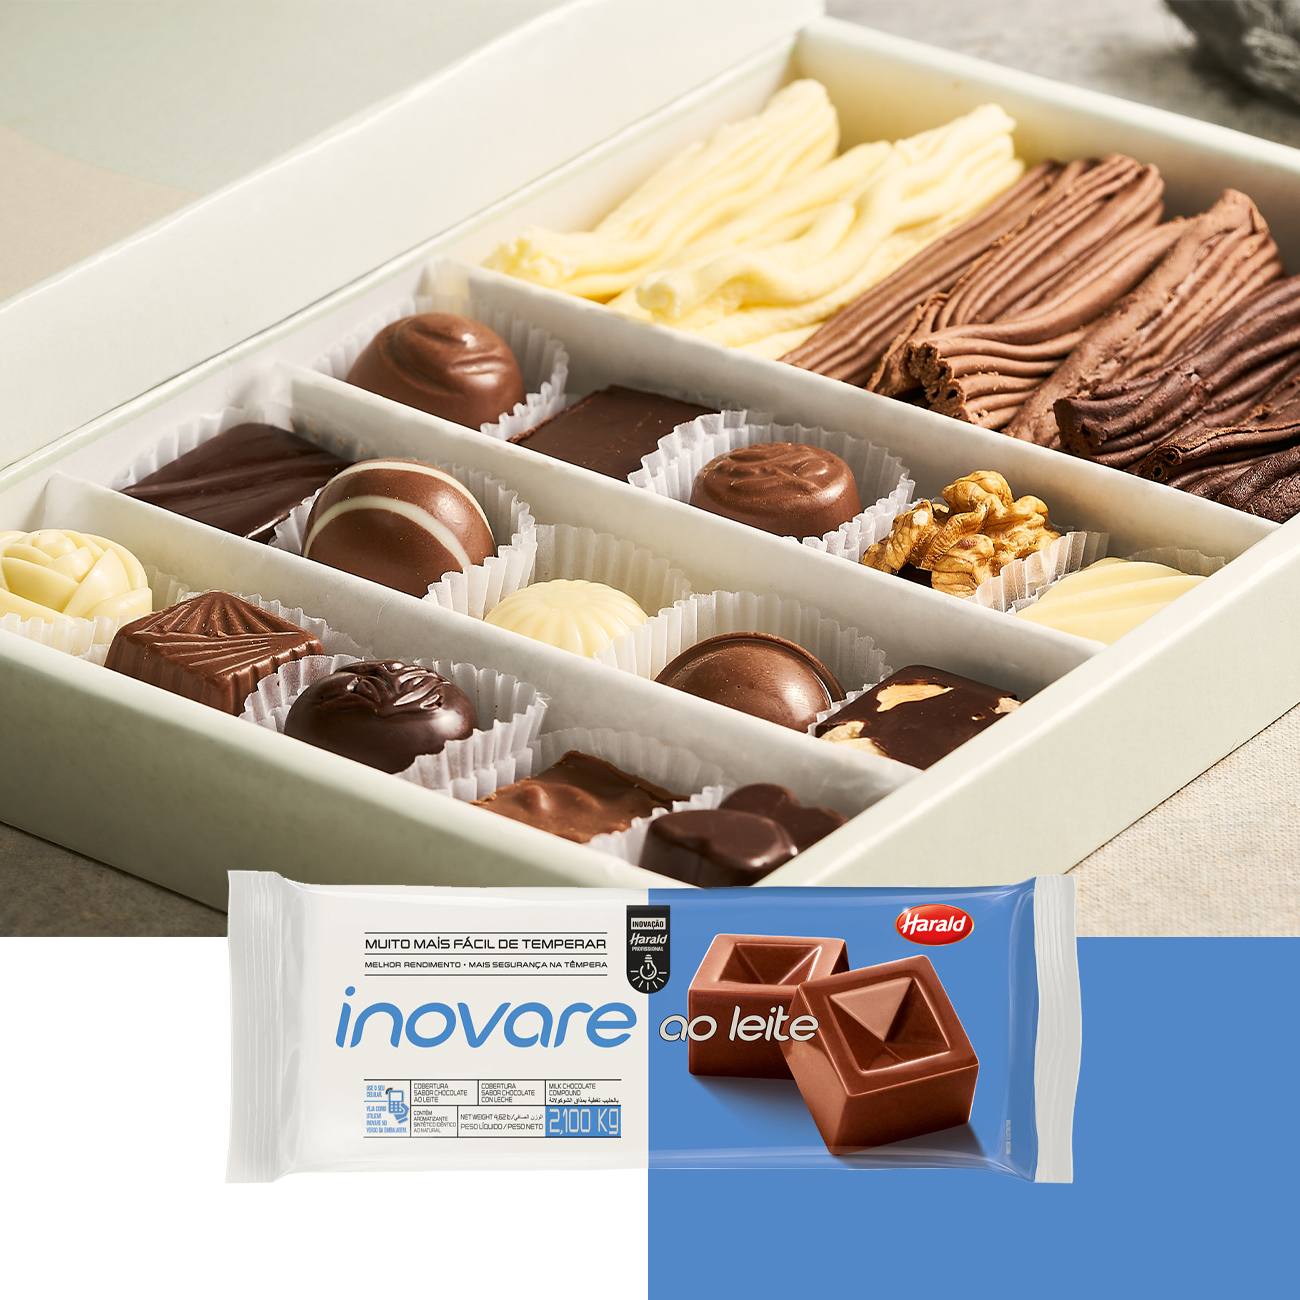 Cobertura de Chocolate em Barra Harald Inovare ao Leite 2,1kg